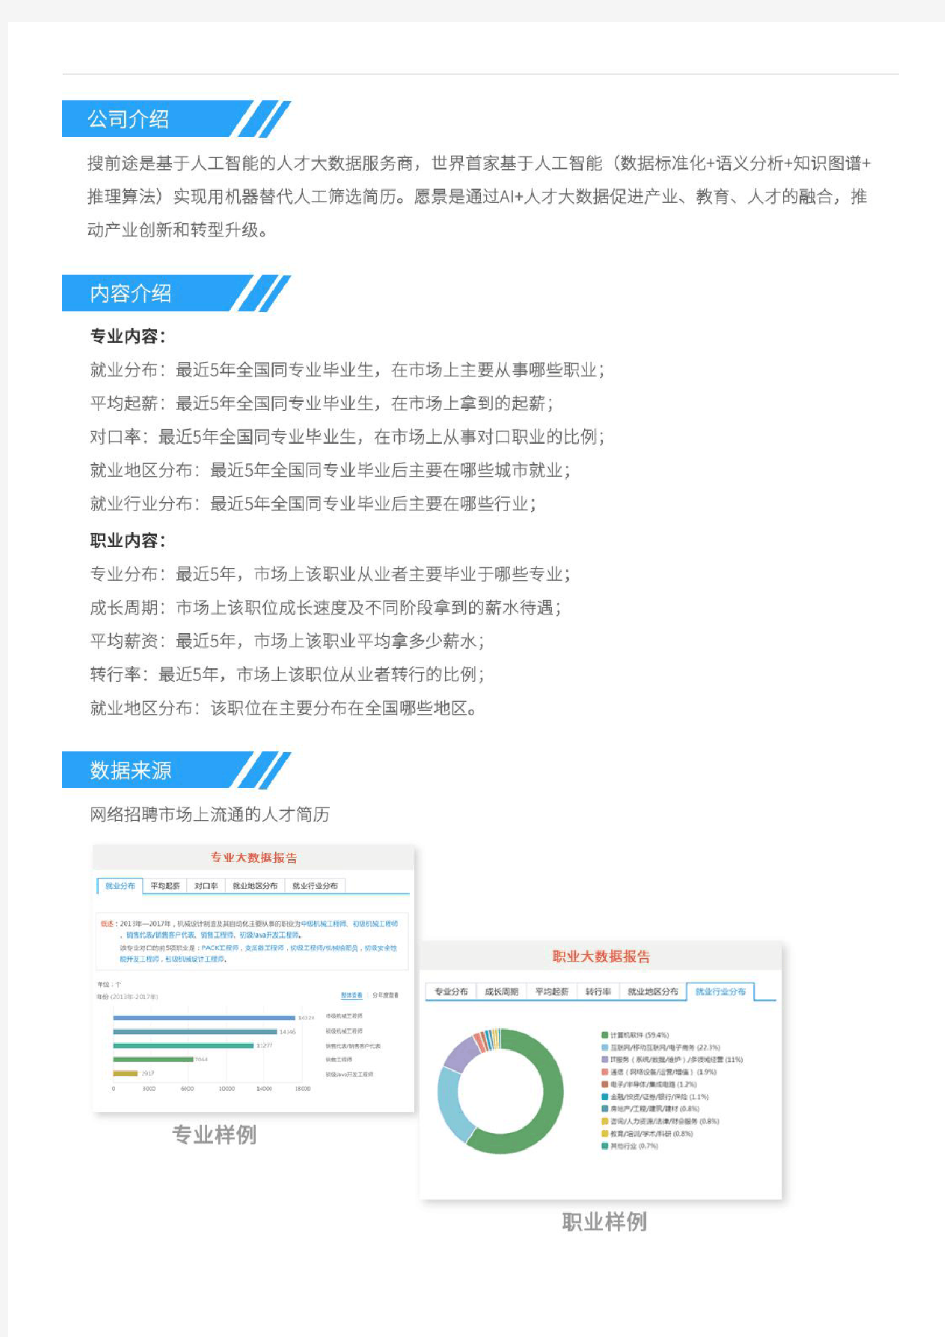 2013-2017年上海外国语大学英语专业毕业生就业大数据报告